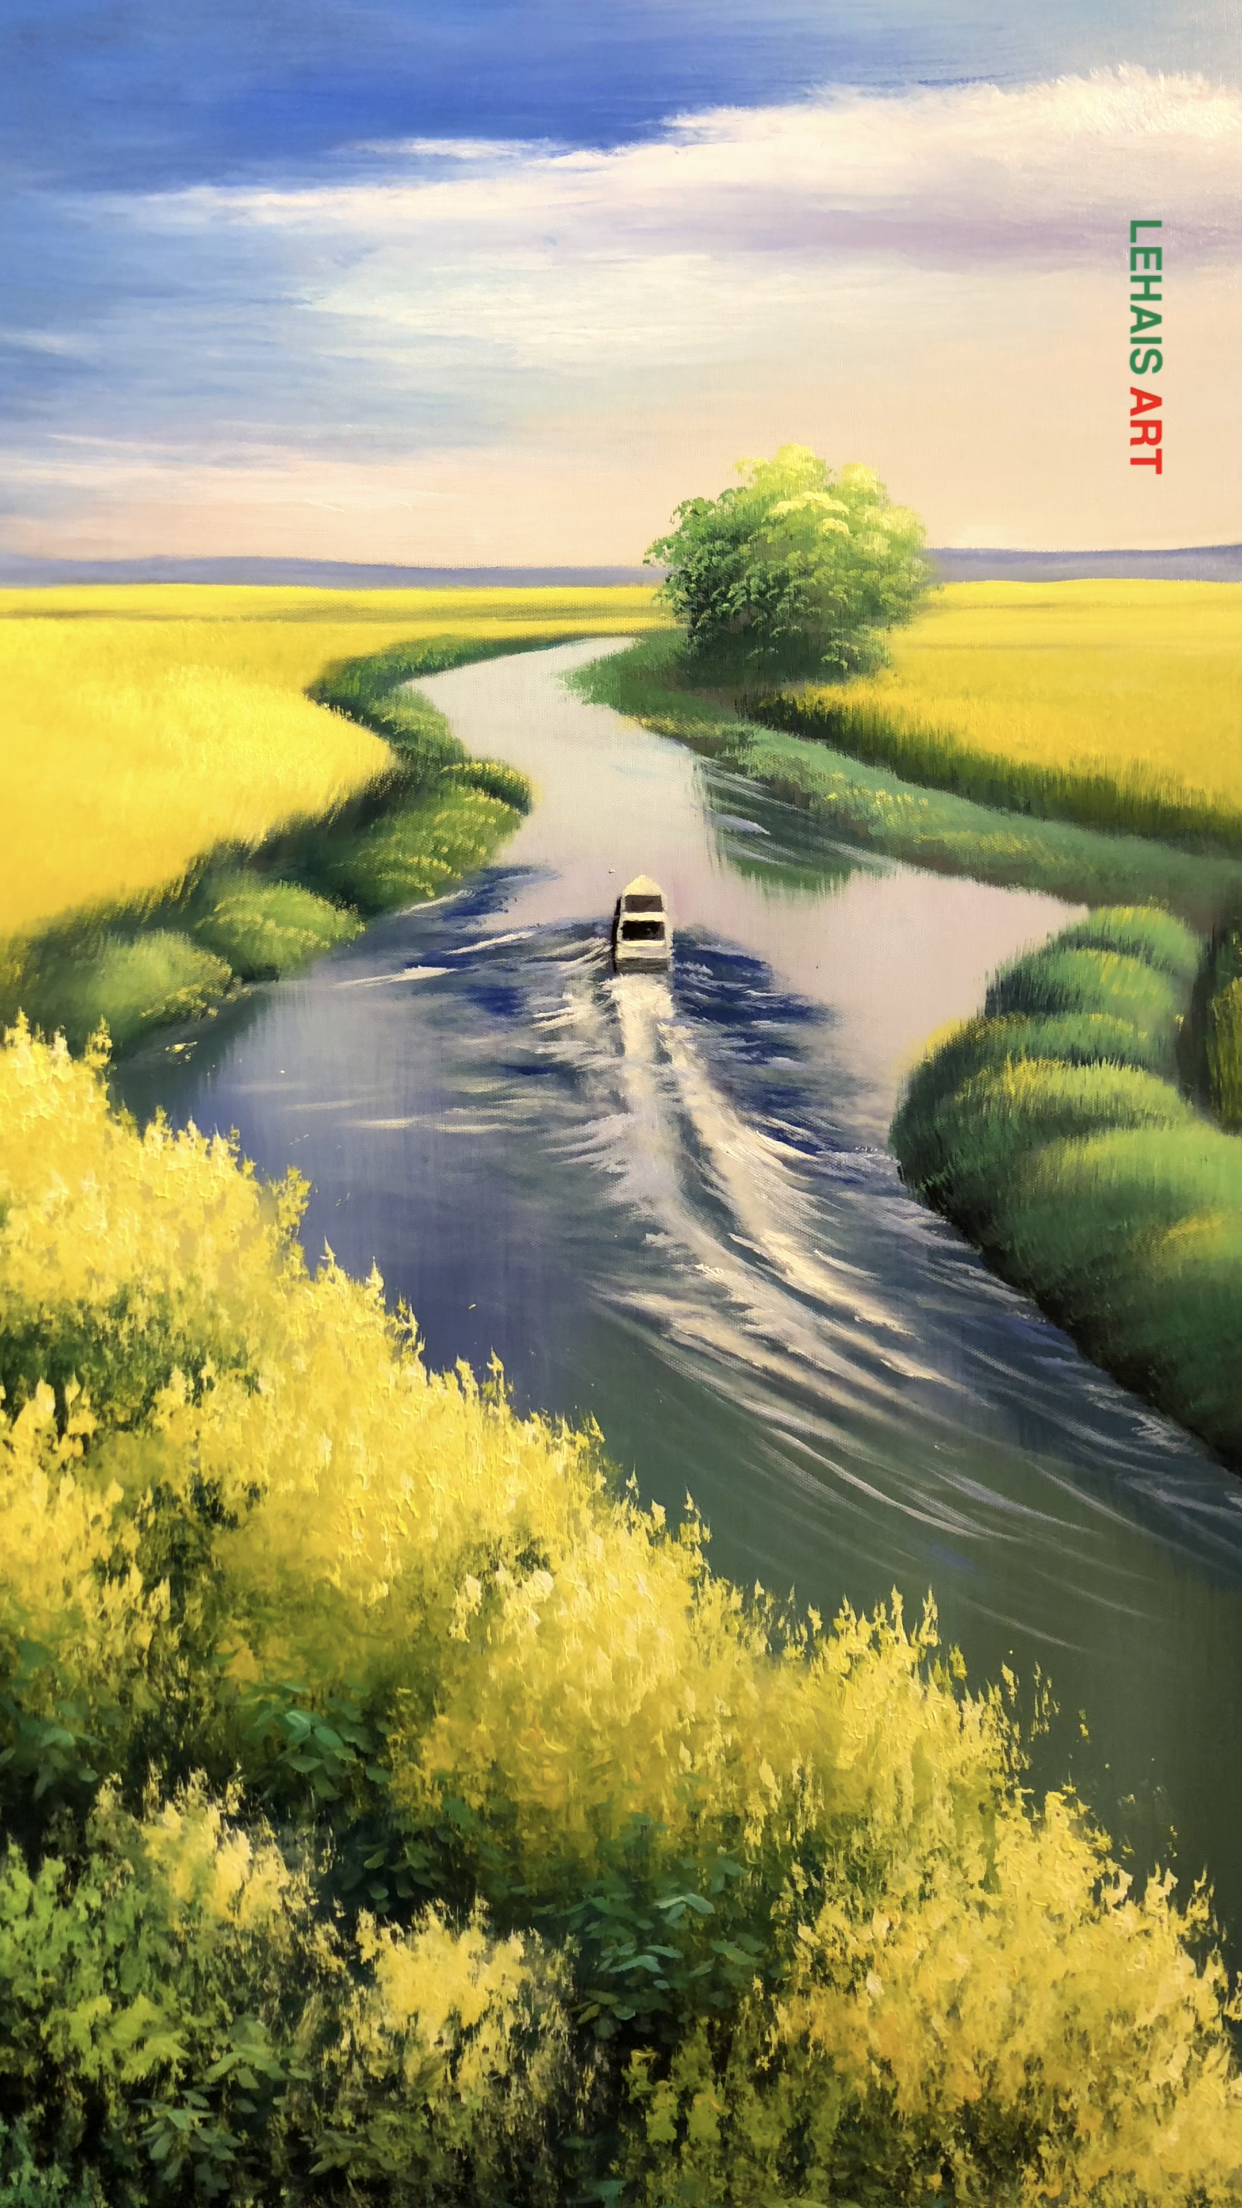 Cùng đi thuyền và ngắm cảnh đồng quê cực đẹp qua bức tranh sơn dầu